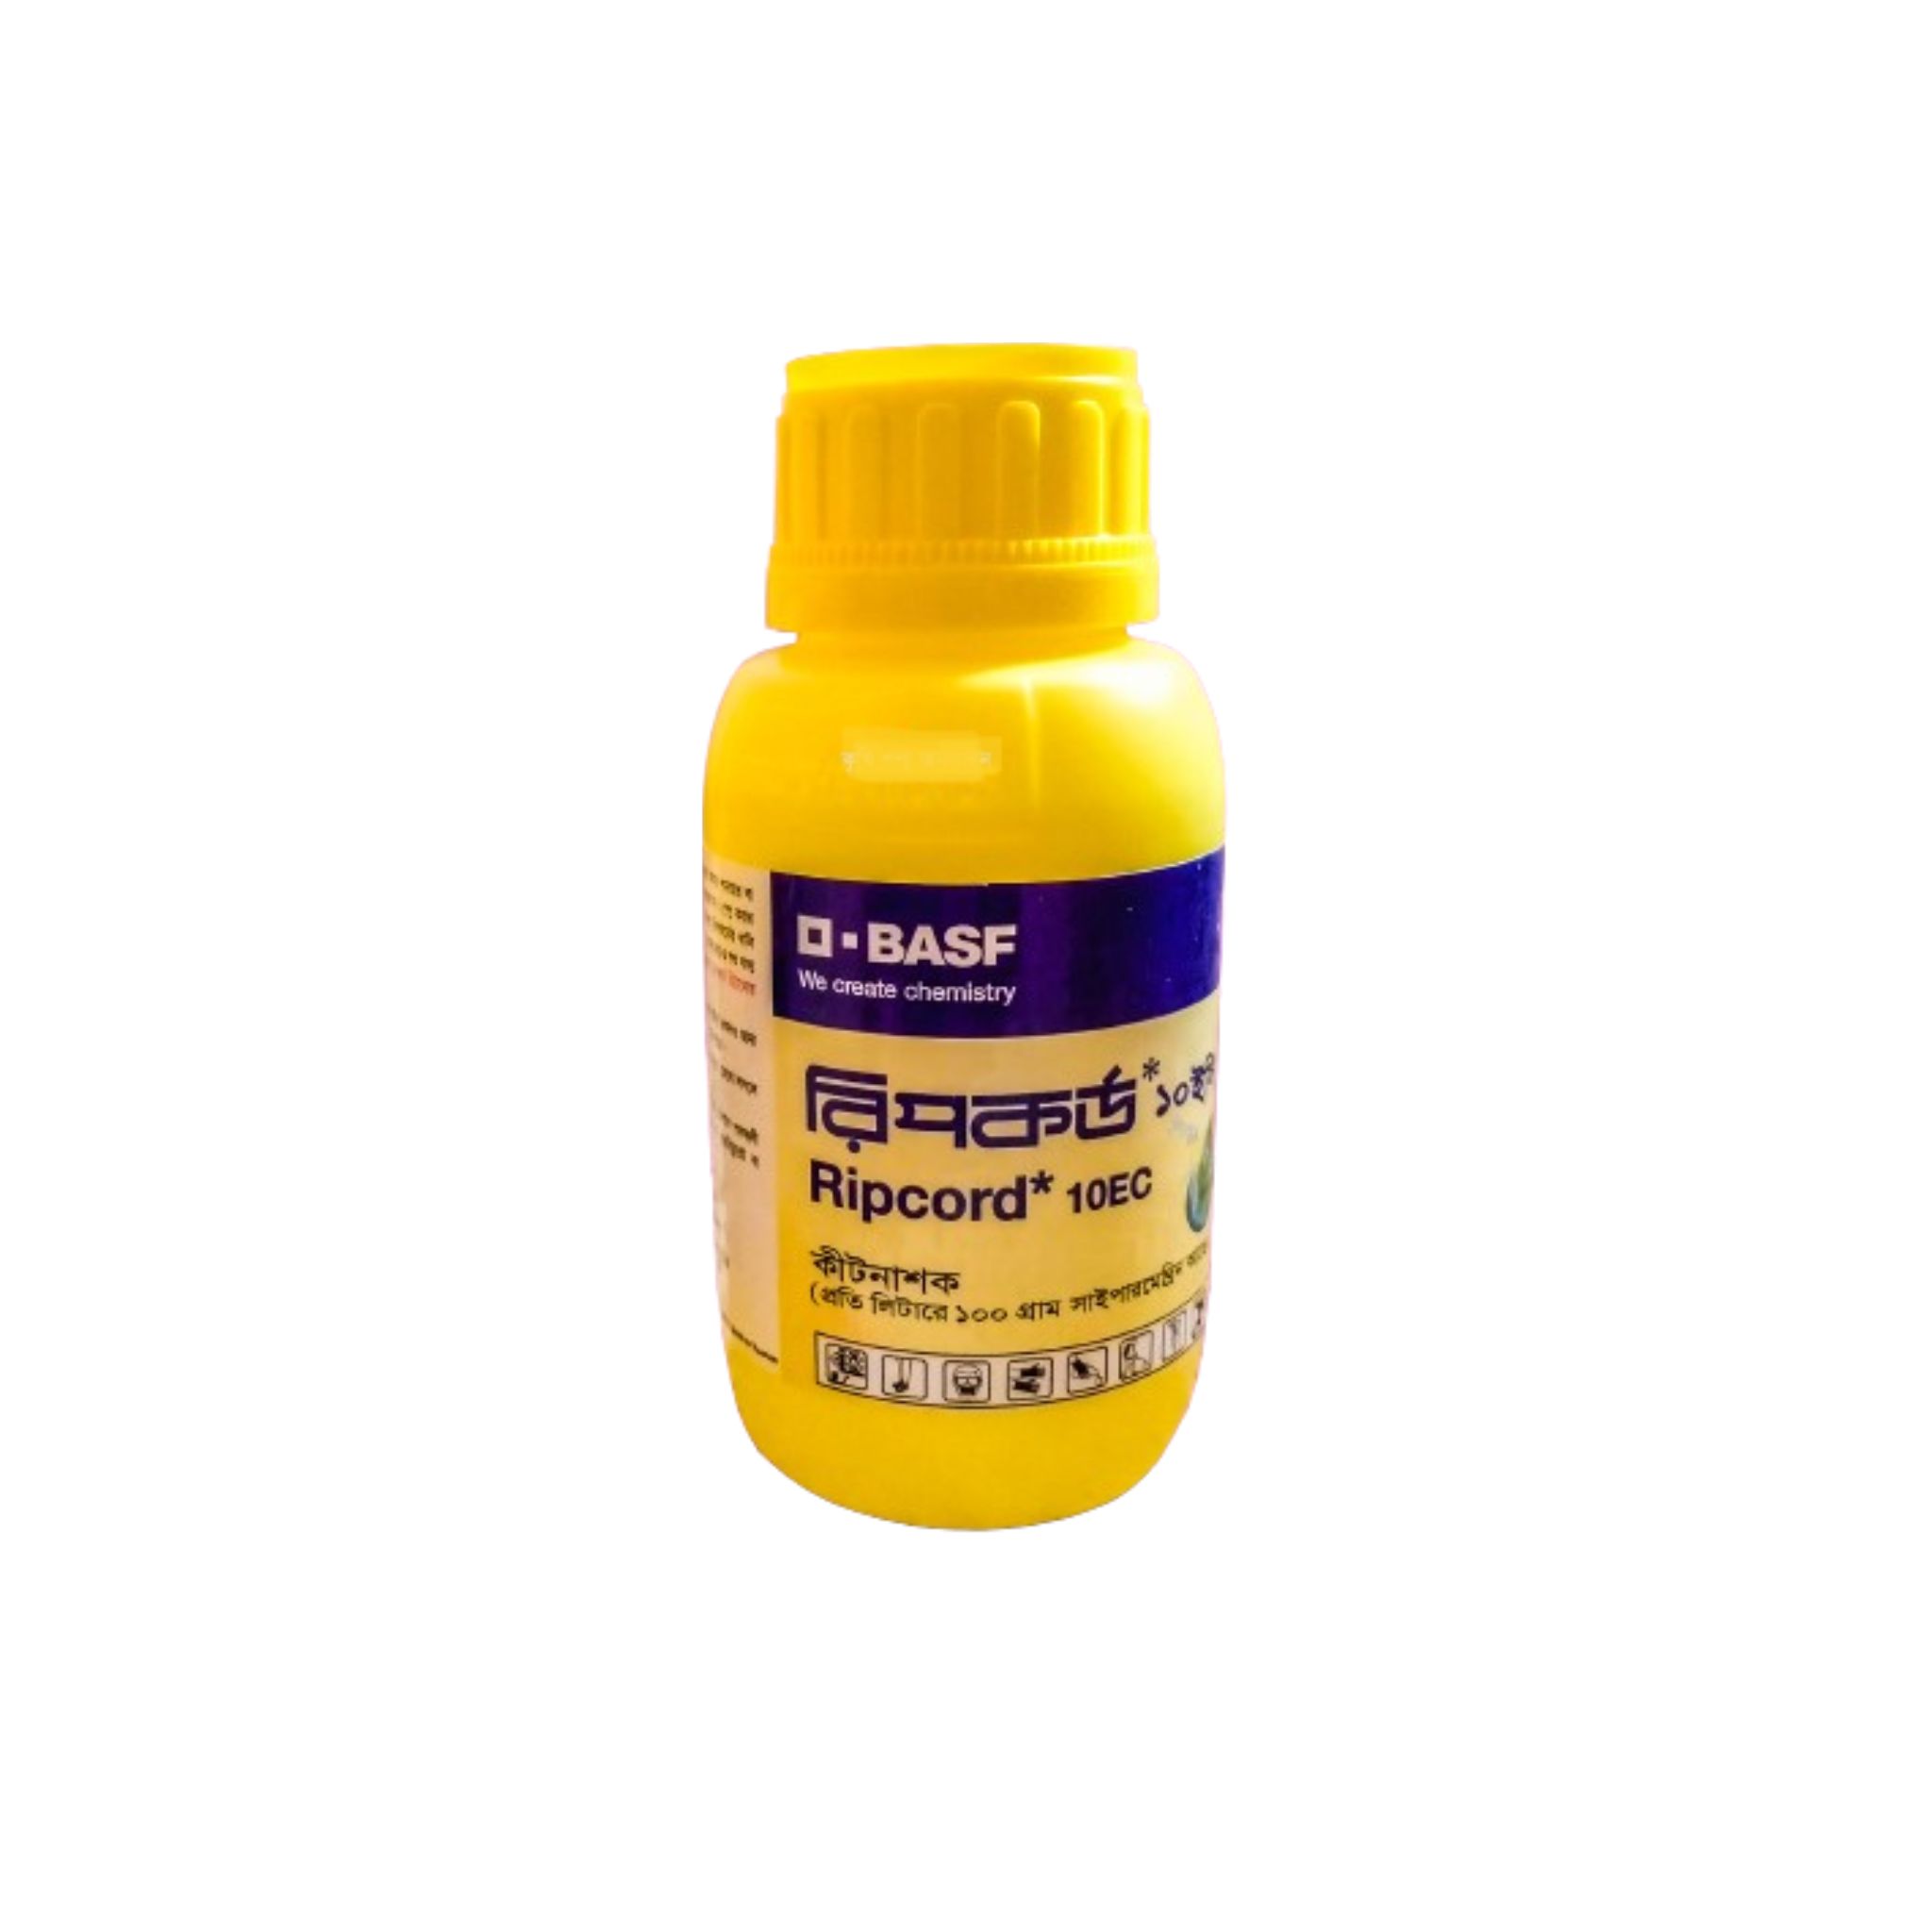 Ripcord Insecticide (10 EC – Cypermethrin) । রিপকর্ড পোকা-মাকড় দমনকারী মেডিসিন